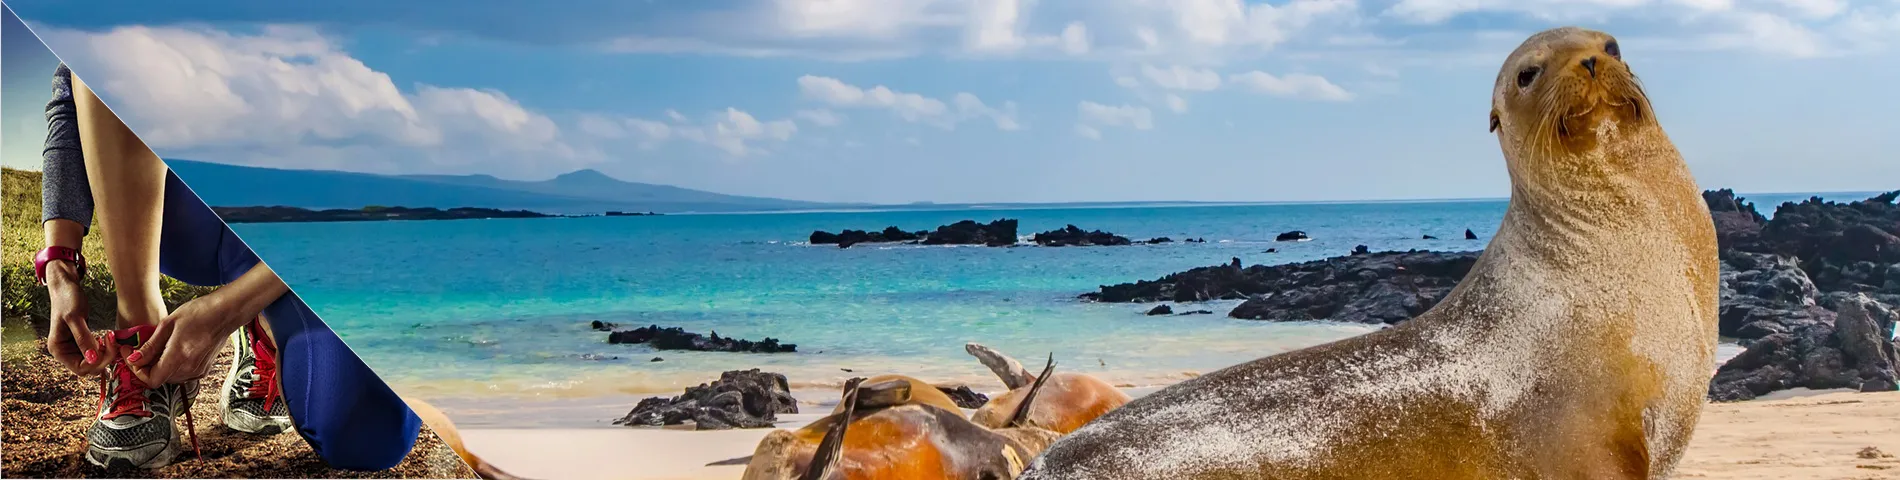 Galapagos Islands - 